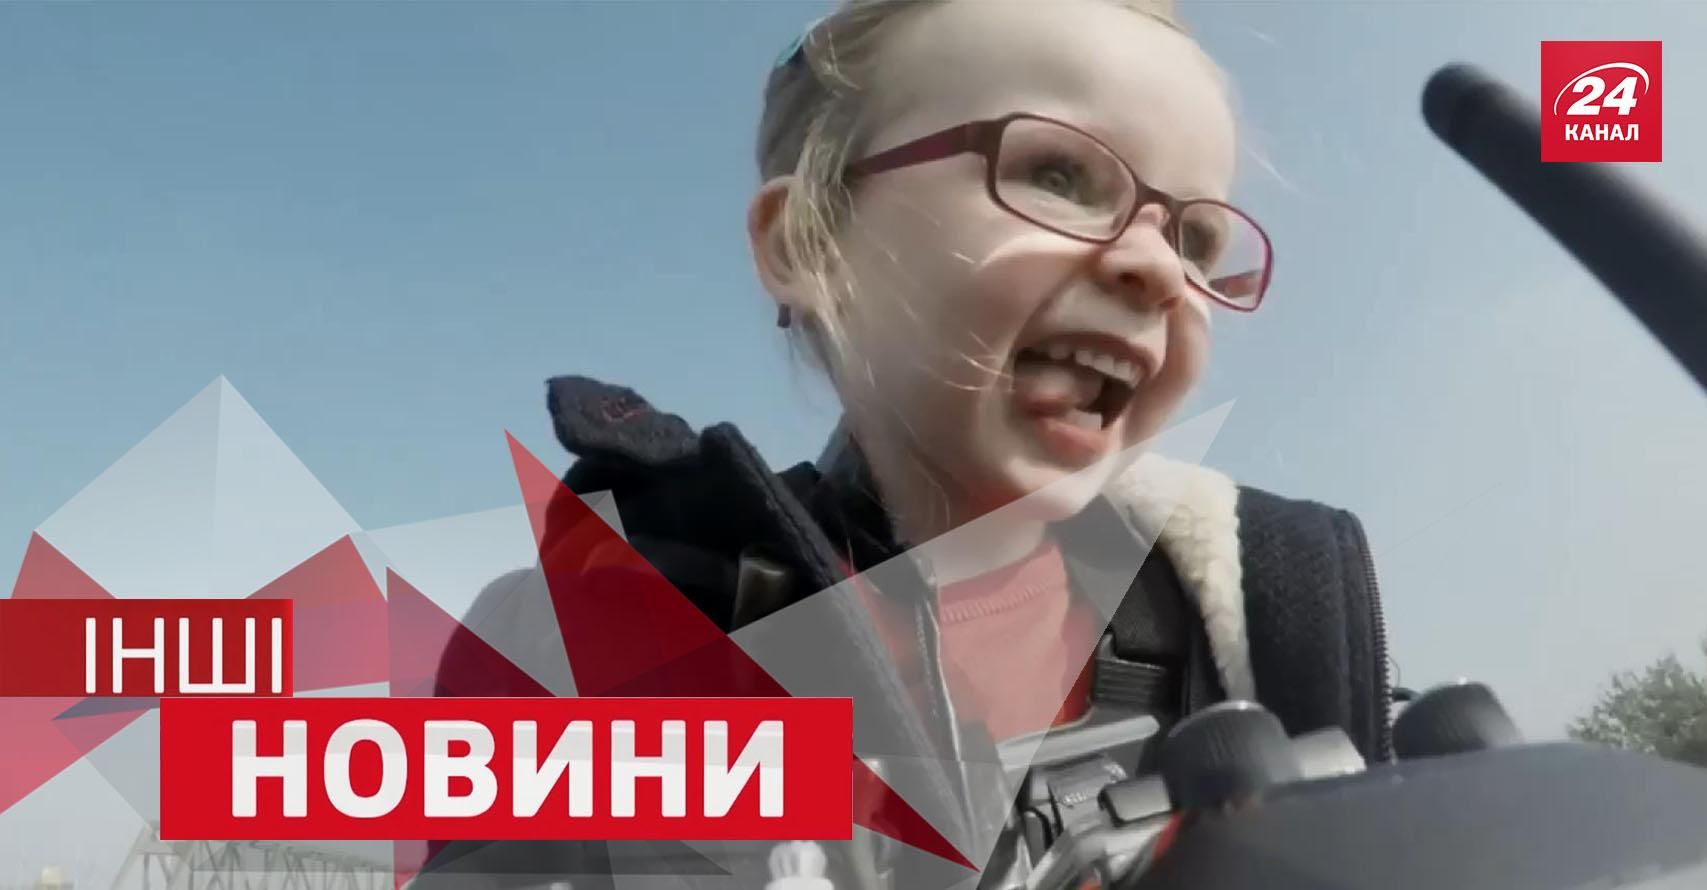 ДРУГИЕ Новости. Маленькая девочка управляла огромным самосвалом, почему нельзя спать в метро